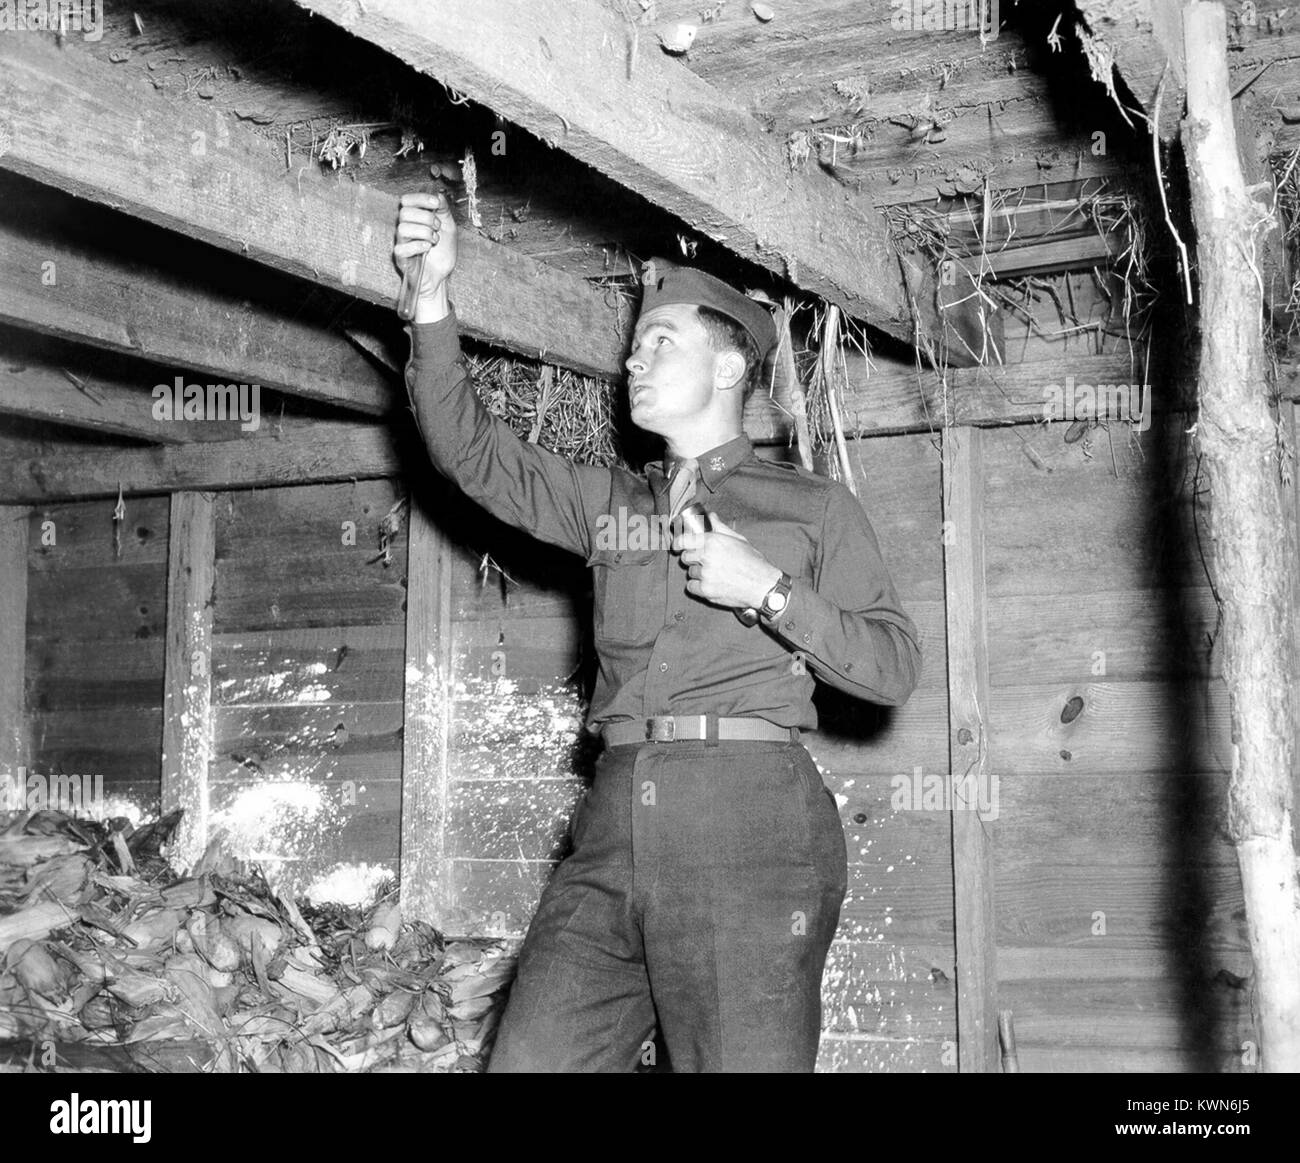 Dieses Foto zeigt ein Inspektor Mücken sammeln in Chloroform Rohre für Vektor Identifikation, 1958. Nachdem sie mit Chloroform betäubt Dampf, diese Mücken waren später in den Hoffnungen identifiziert geeignete Maßnahmen zur Verringerung der Vektor Bevölkerung zu bestimmen. Mit freundlicher CDC. Stockfoto